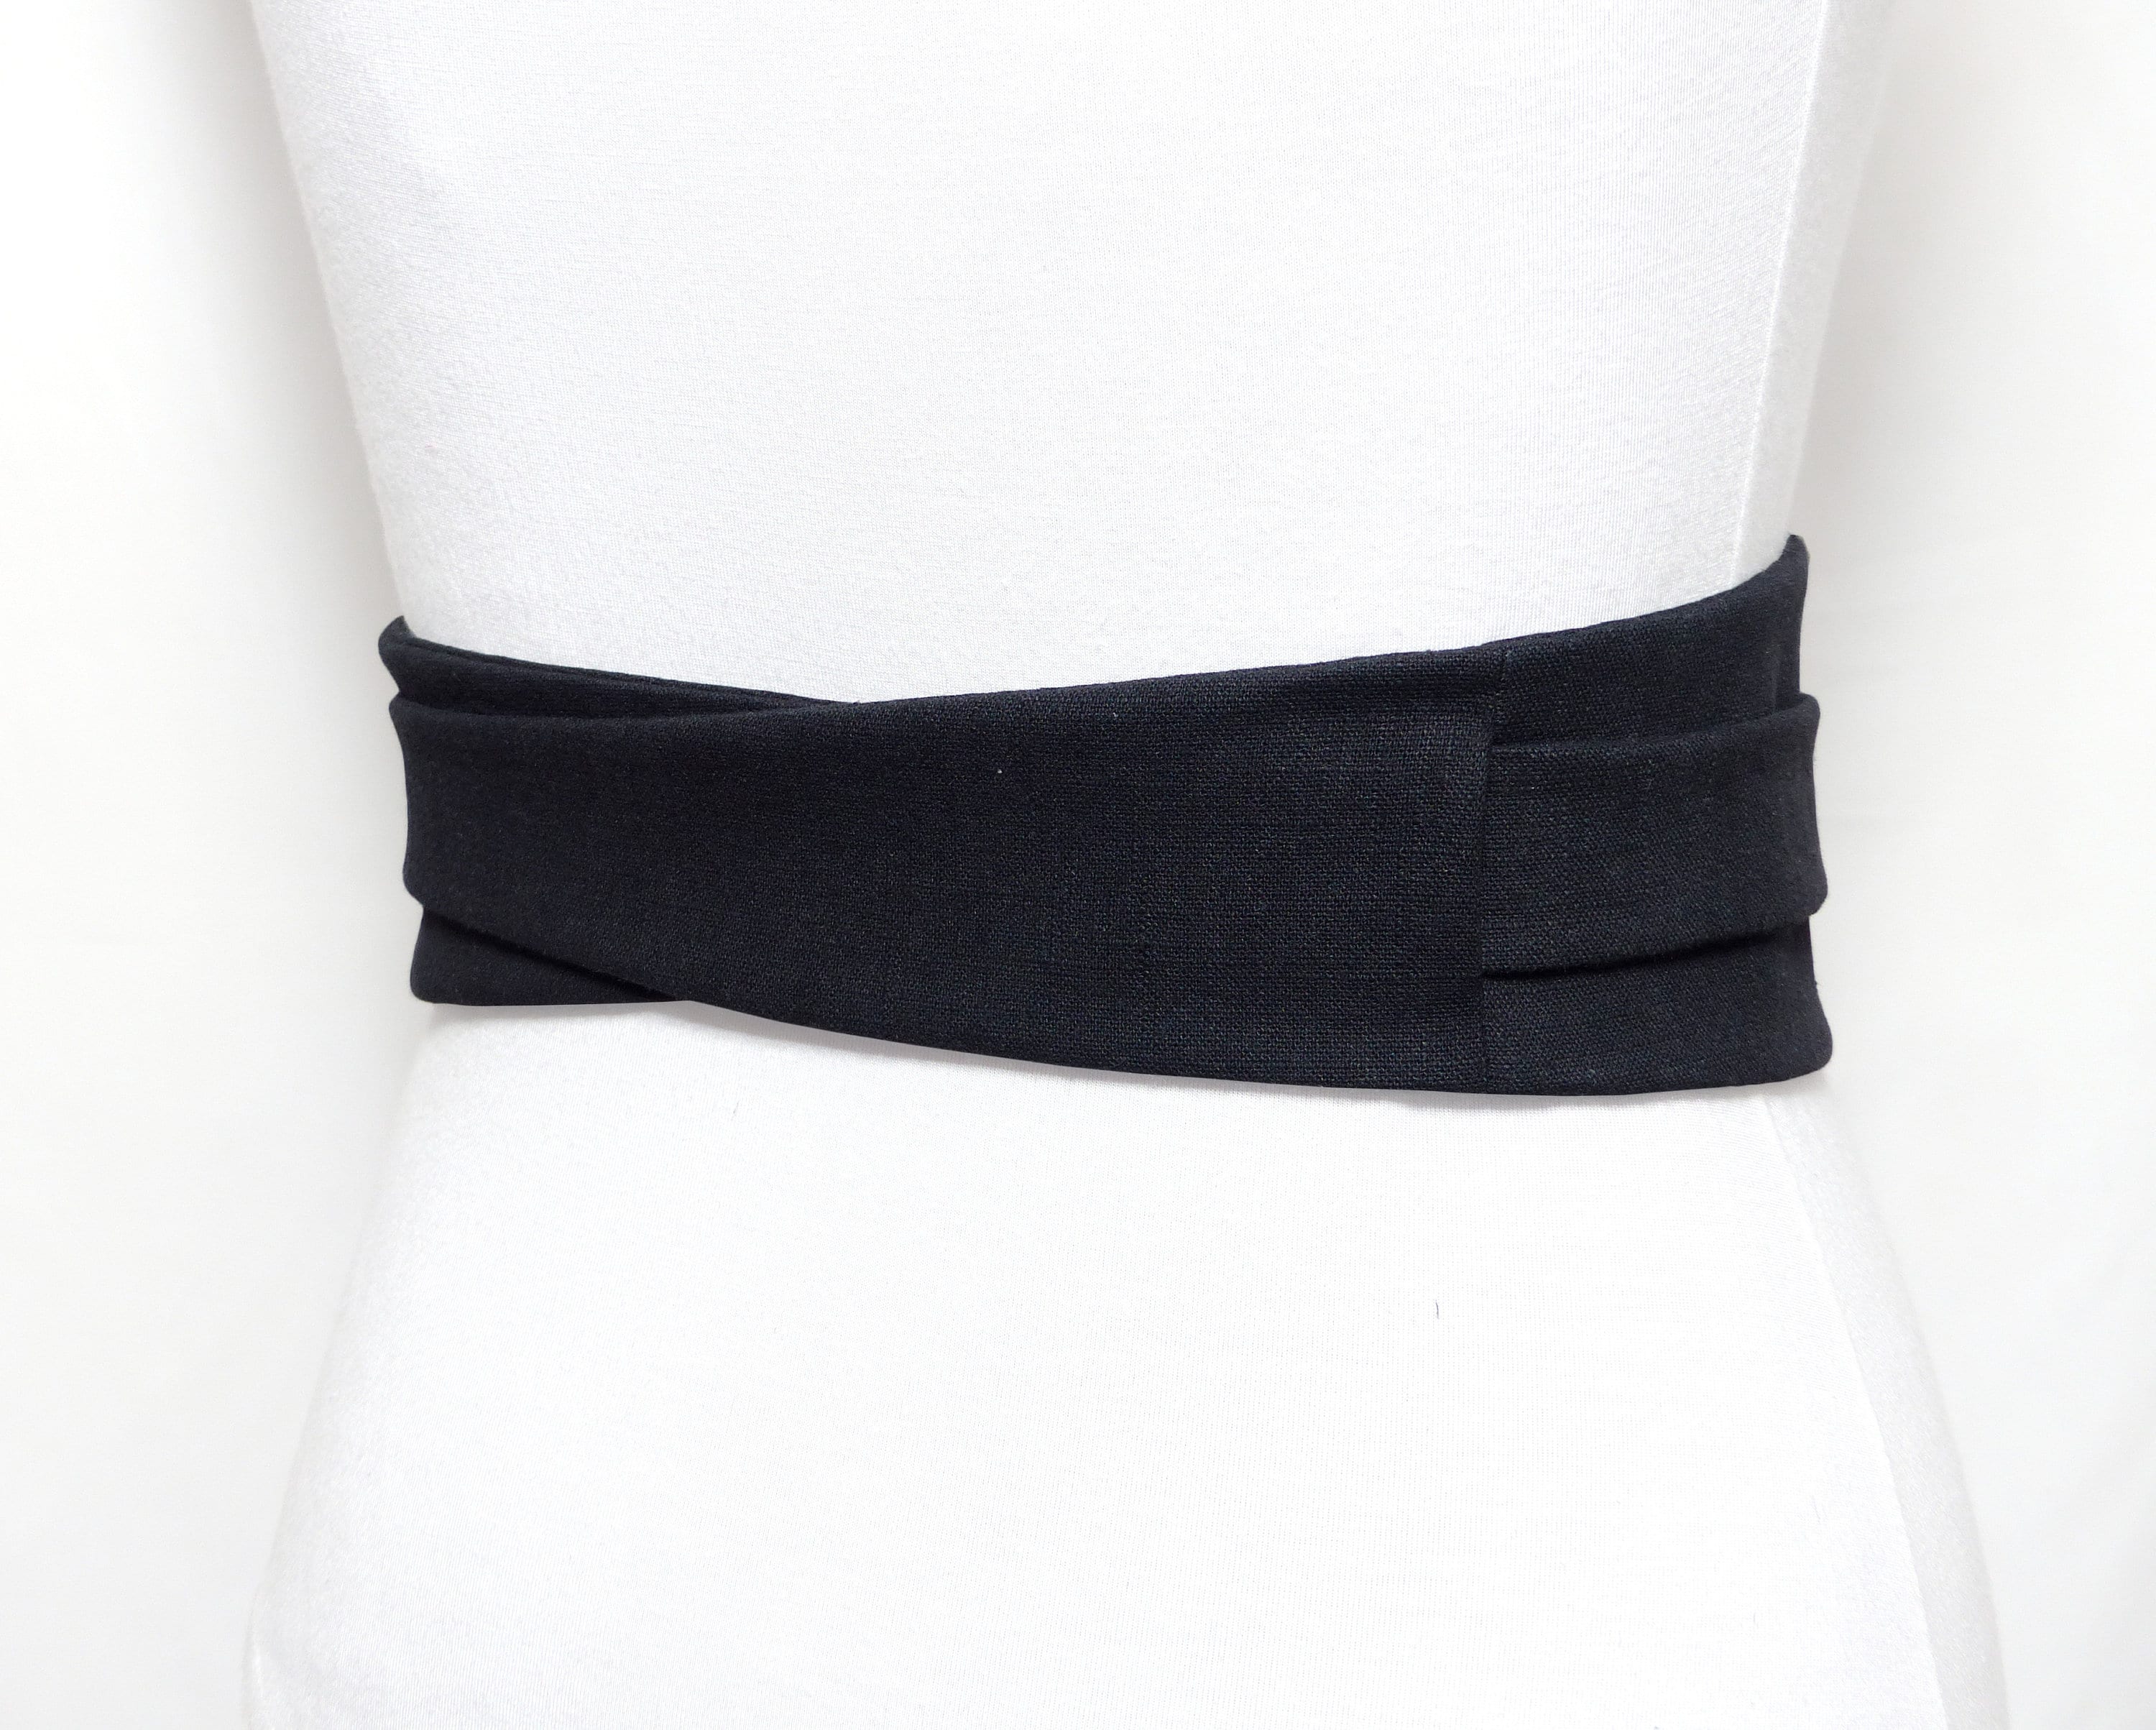 Top Quality LINEN Black Obi Belt, Fabric Waist Belt, Wide Wrap